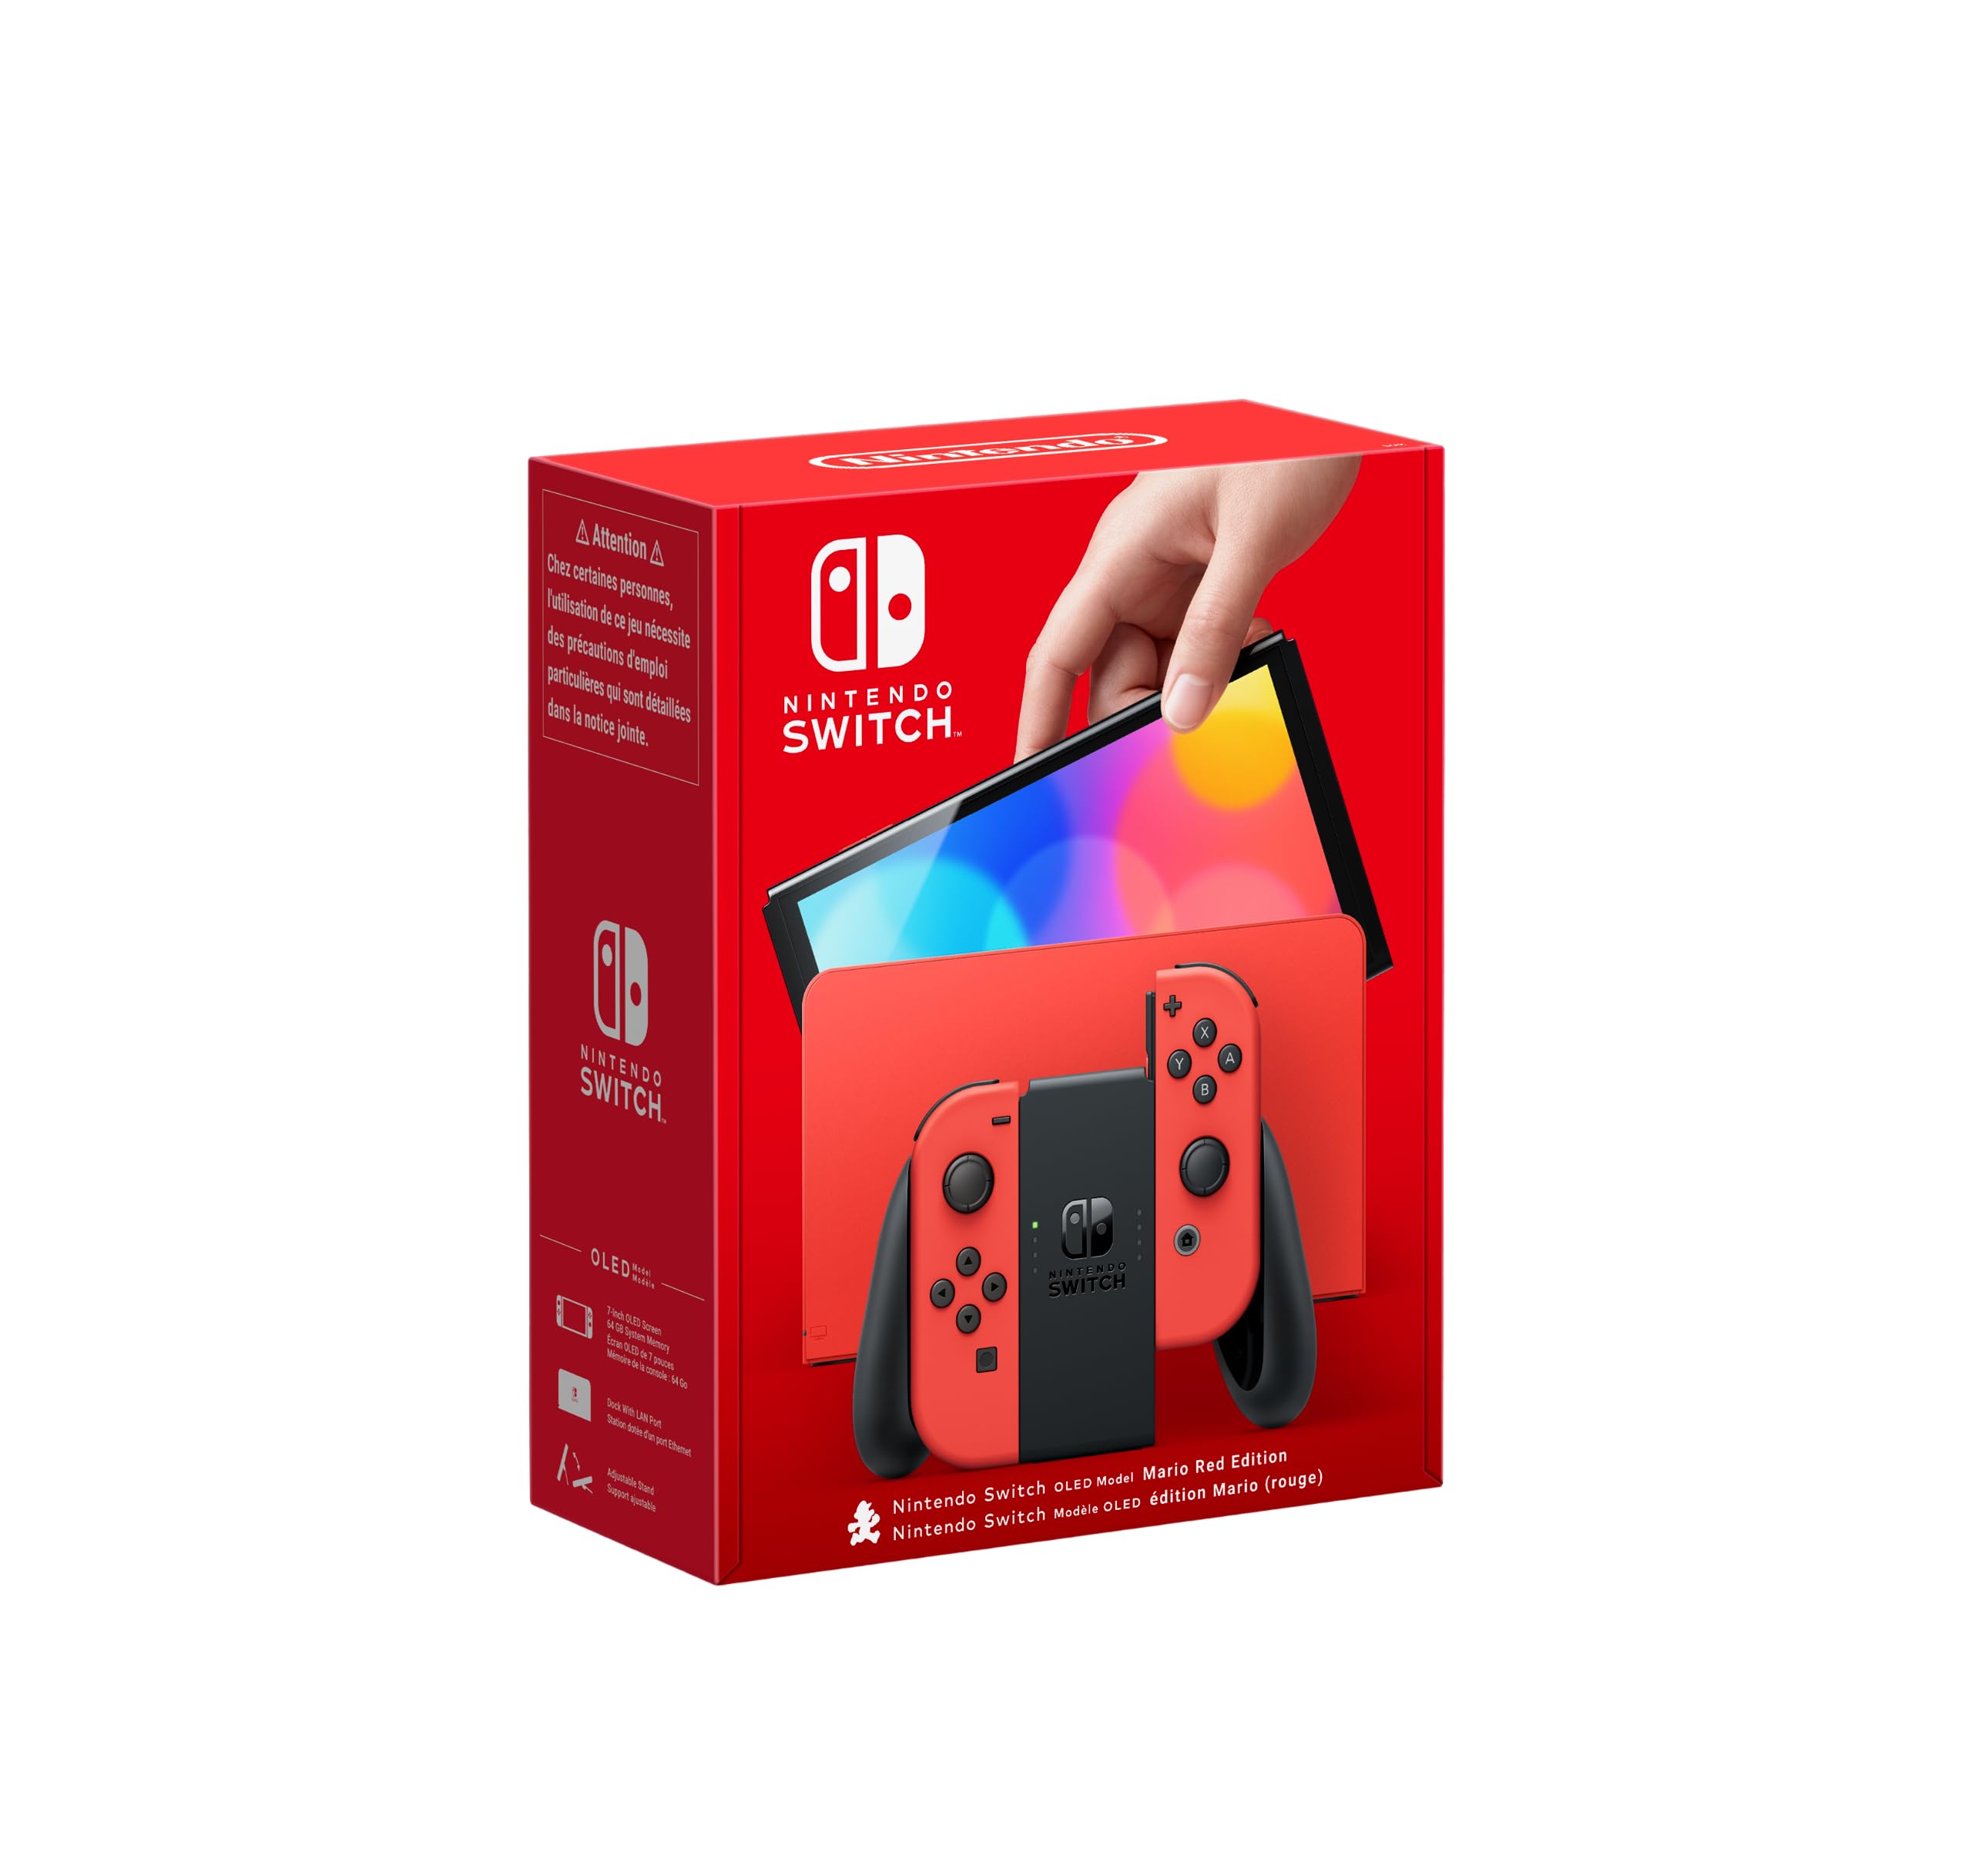 escompte élevé Nintendo Console Nintendo Switch - Modèle OLED Edition Mario (rouge) Q9D7wyVPy pas cher